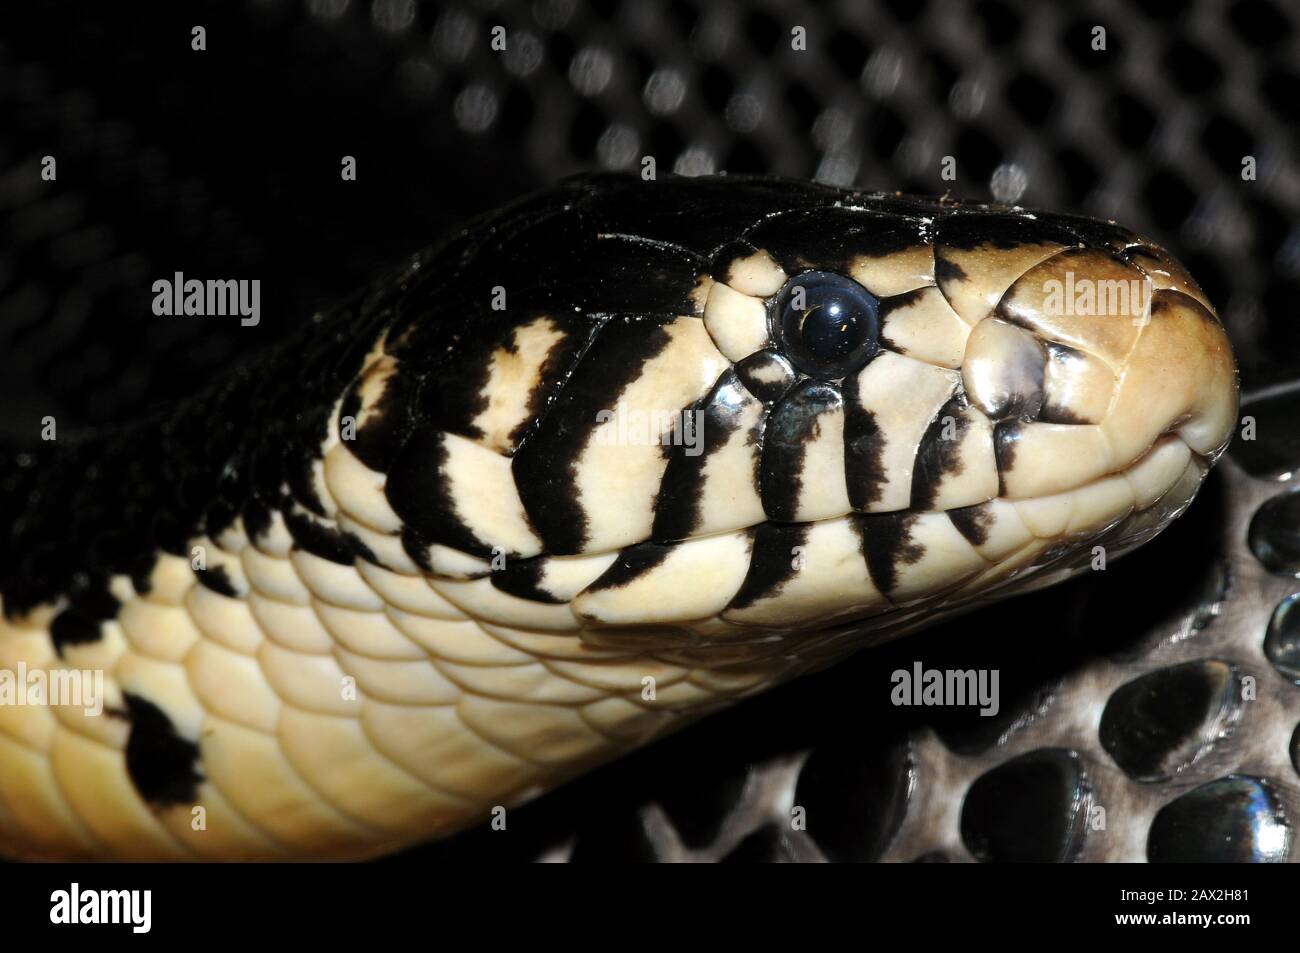 Waldkobra, schwarze Kobra, schwarz-weiß-lippige Kobra, Schwarzweiße Hutschlange, Naja melanoleuca, erdei kobra Stockfoto